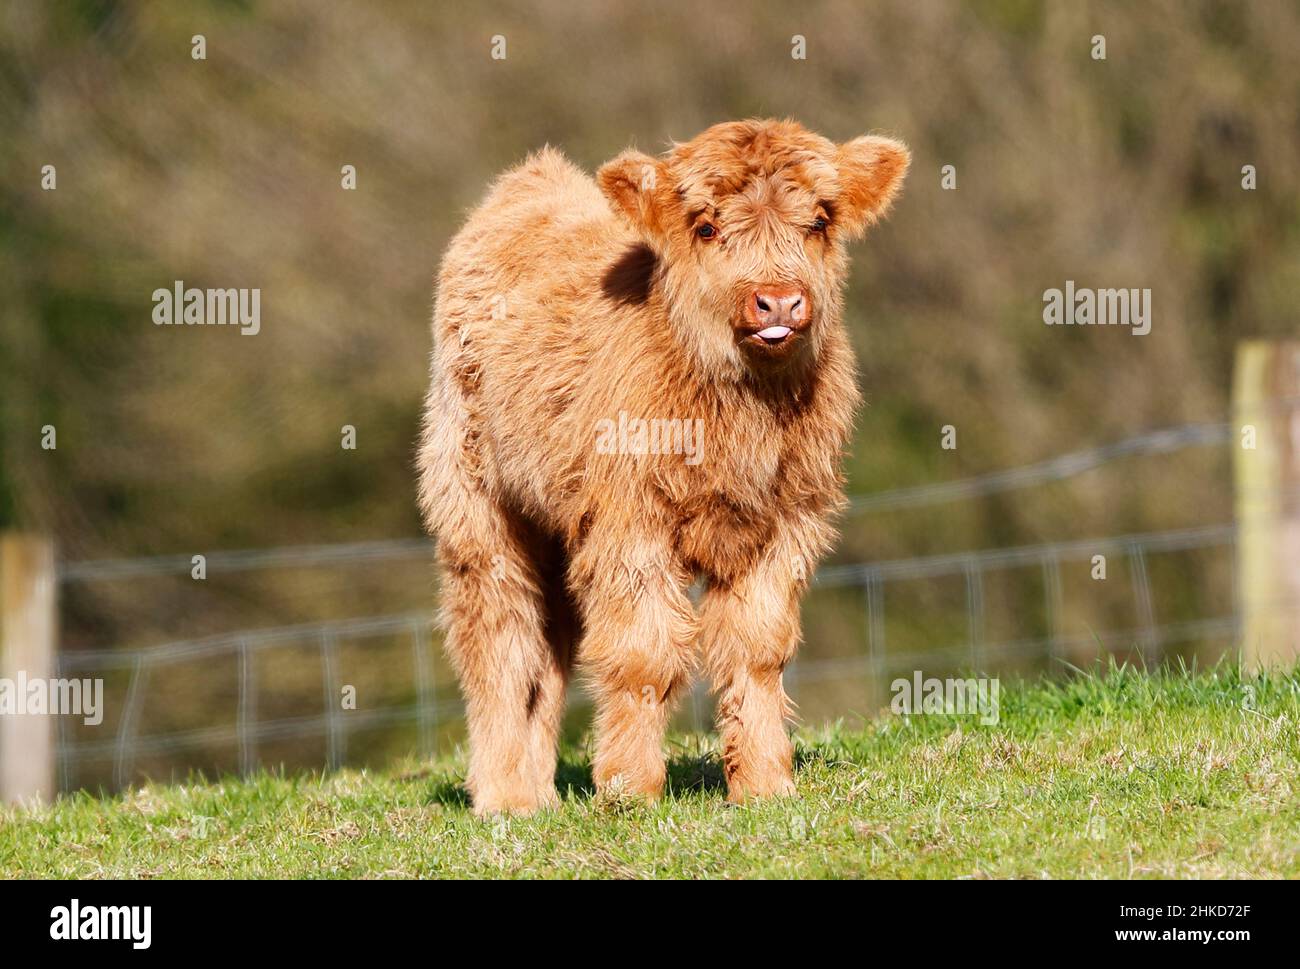 Axel the baby bull calf! #fluffyfeatherfarm #axelthebullcalf #babybul